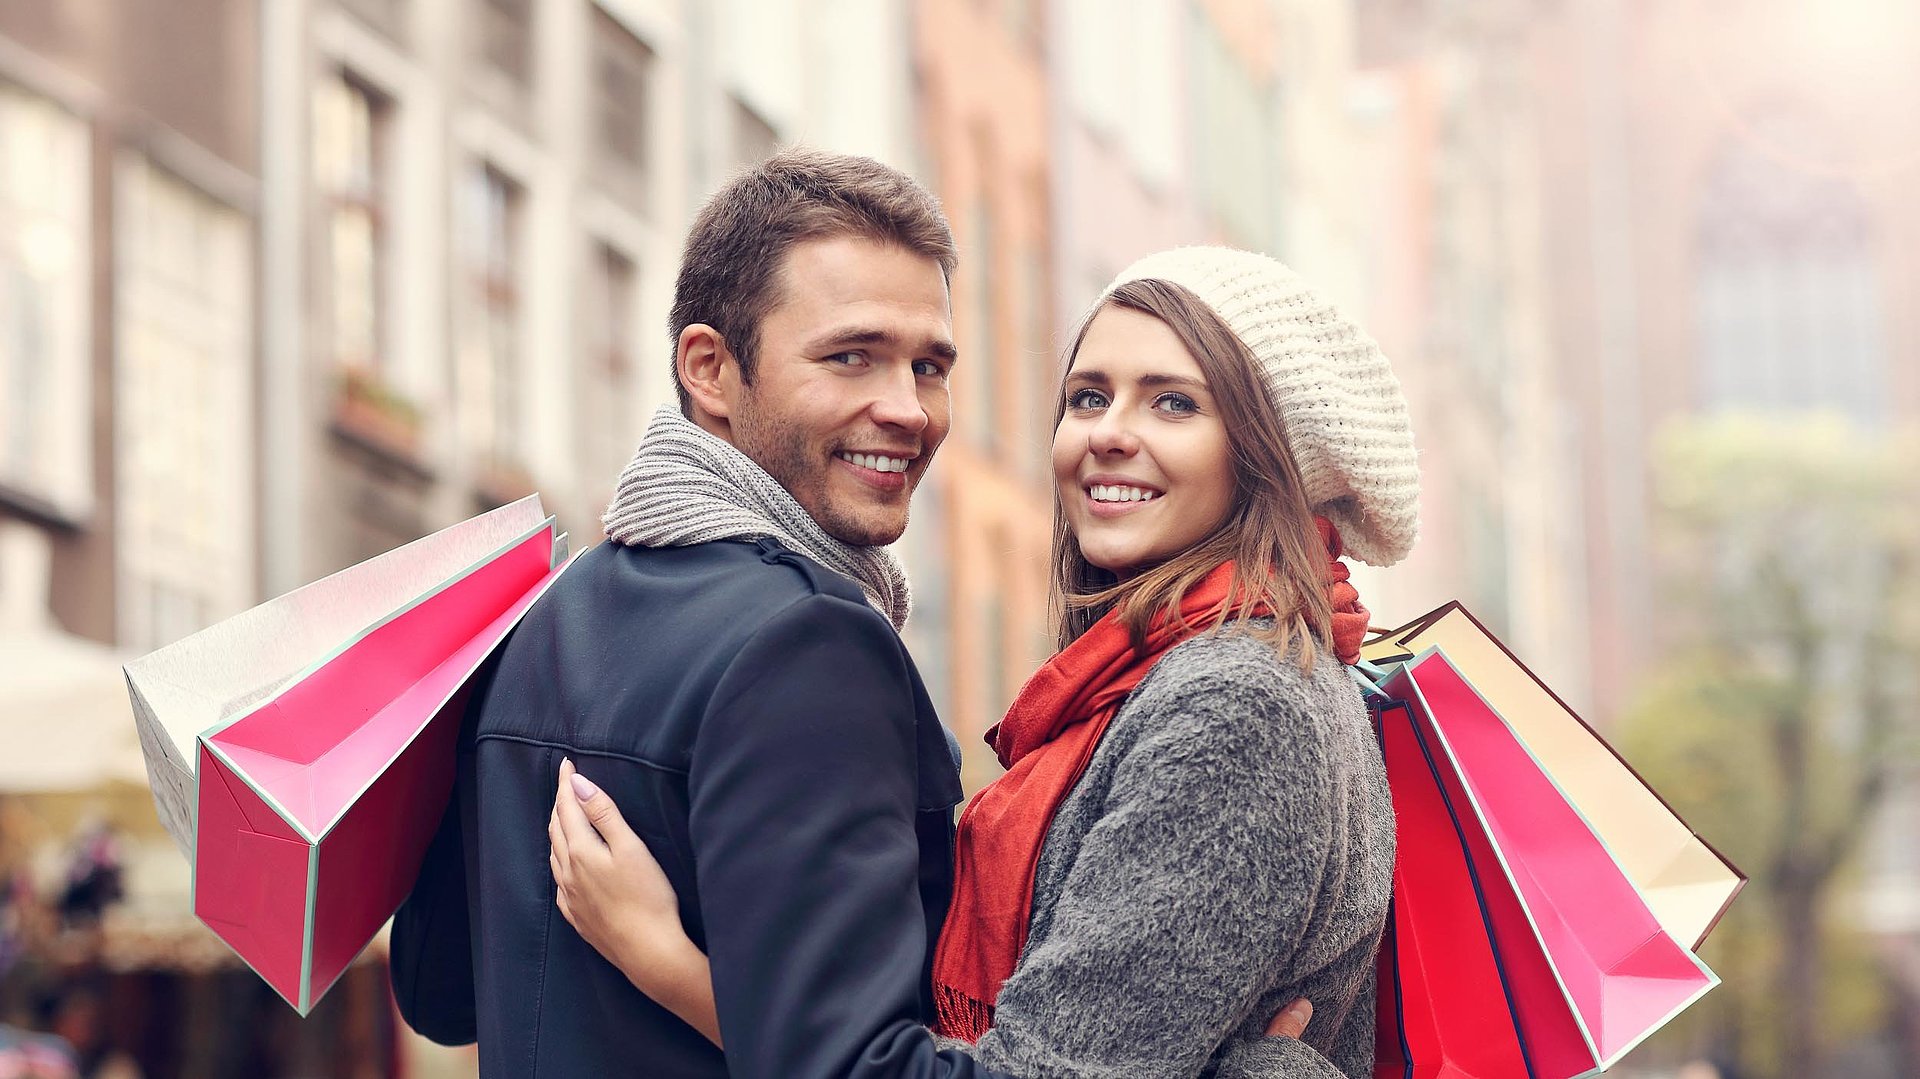 Einkaufen im Fichtelgebirge - Paar mit rosa und weißen Einkaufstüten vor Stadthäusern lächeln in die Kamera